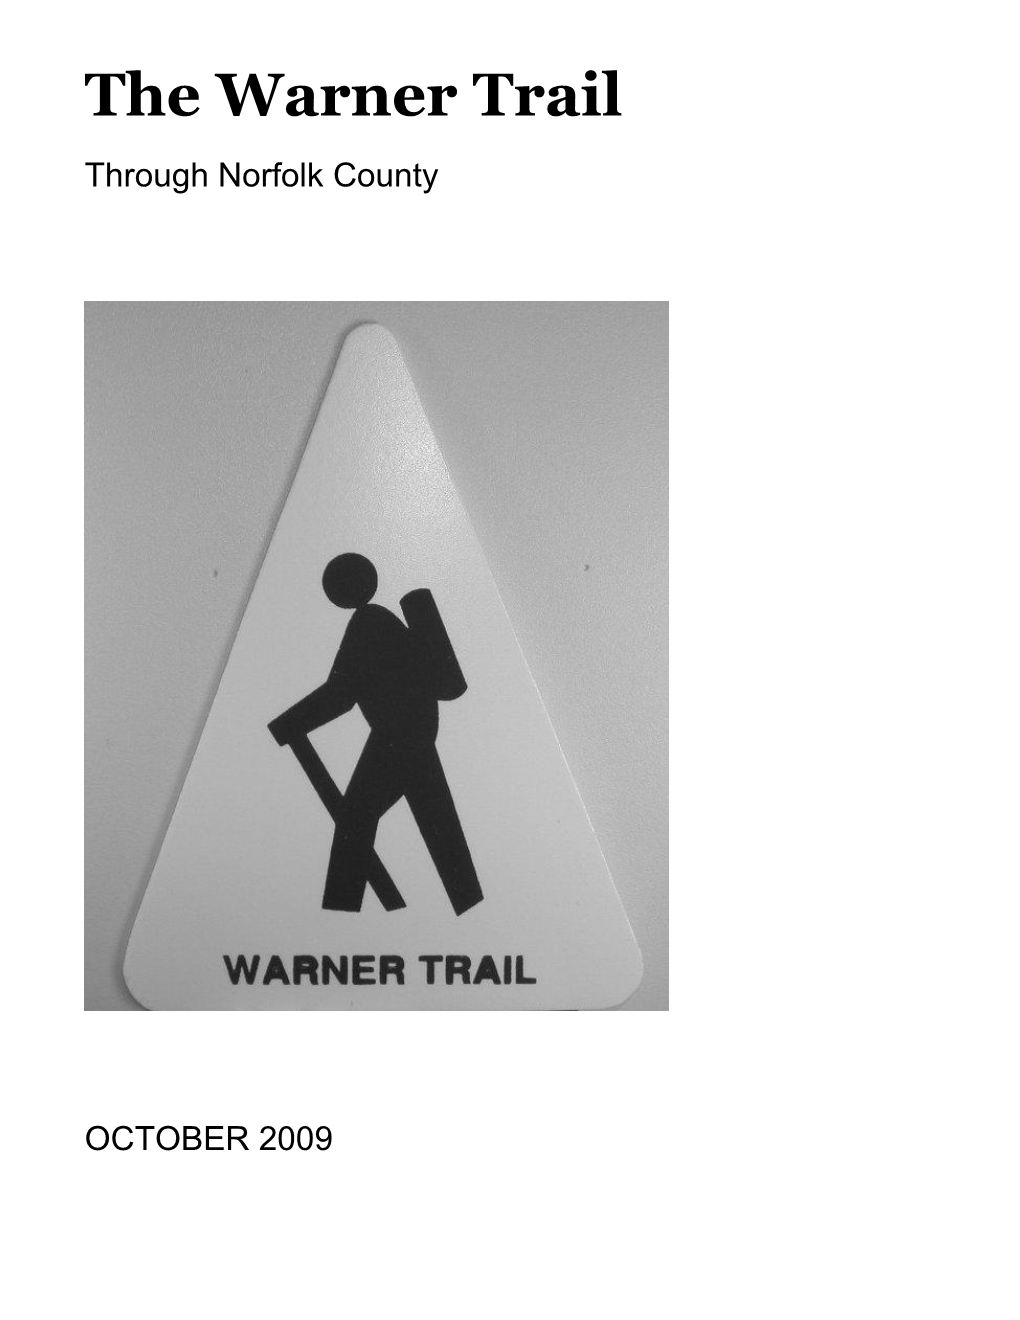 Warner Trail Guidebook